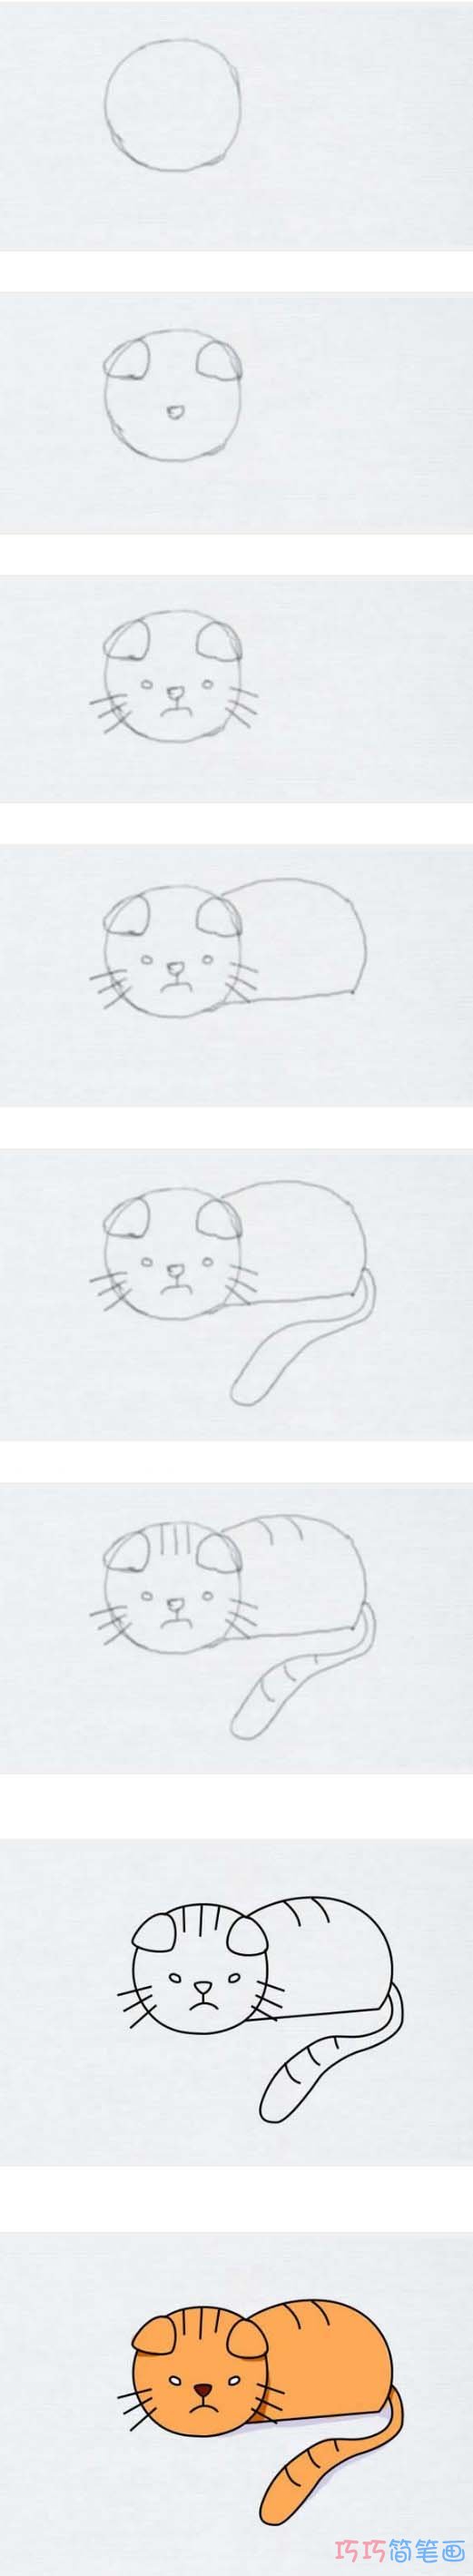 小猫简笔画步骤图带颜色 小猫咪简笔画图片